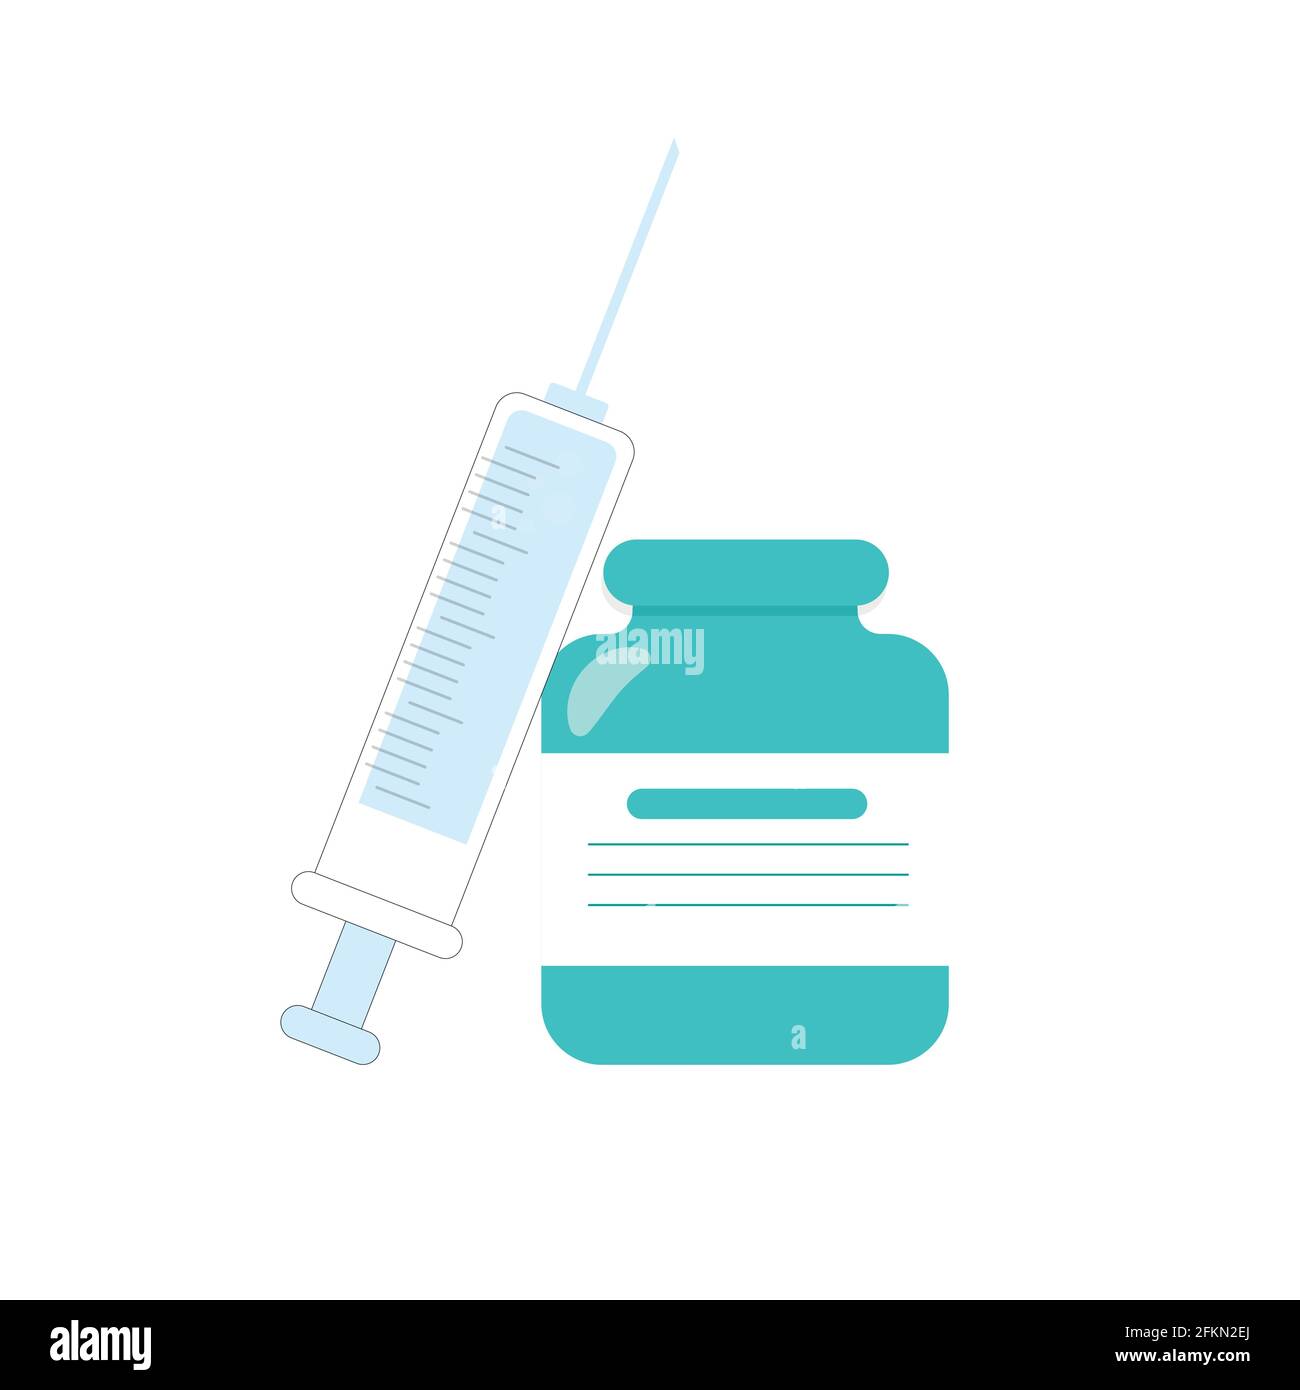 Impfstoff und Spritze, klinisches Fläschchen und Pflege für den Schuss, Apothekenkonzept, Vektordroge für Immunität Illustration Stock Vektor